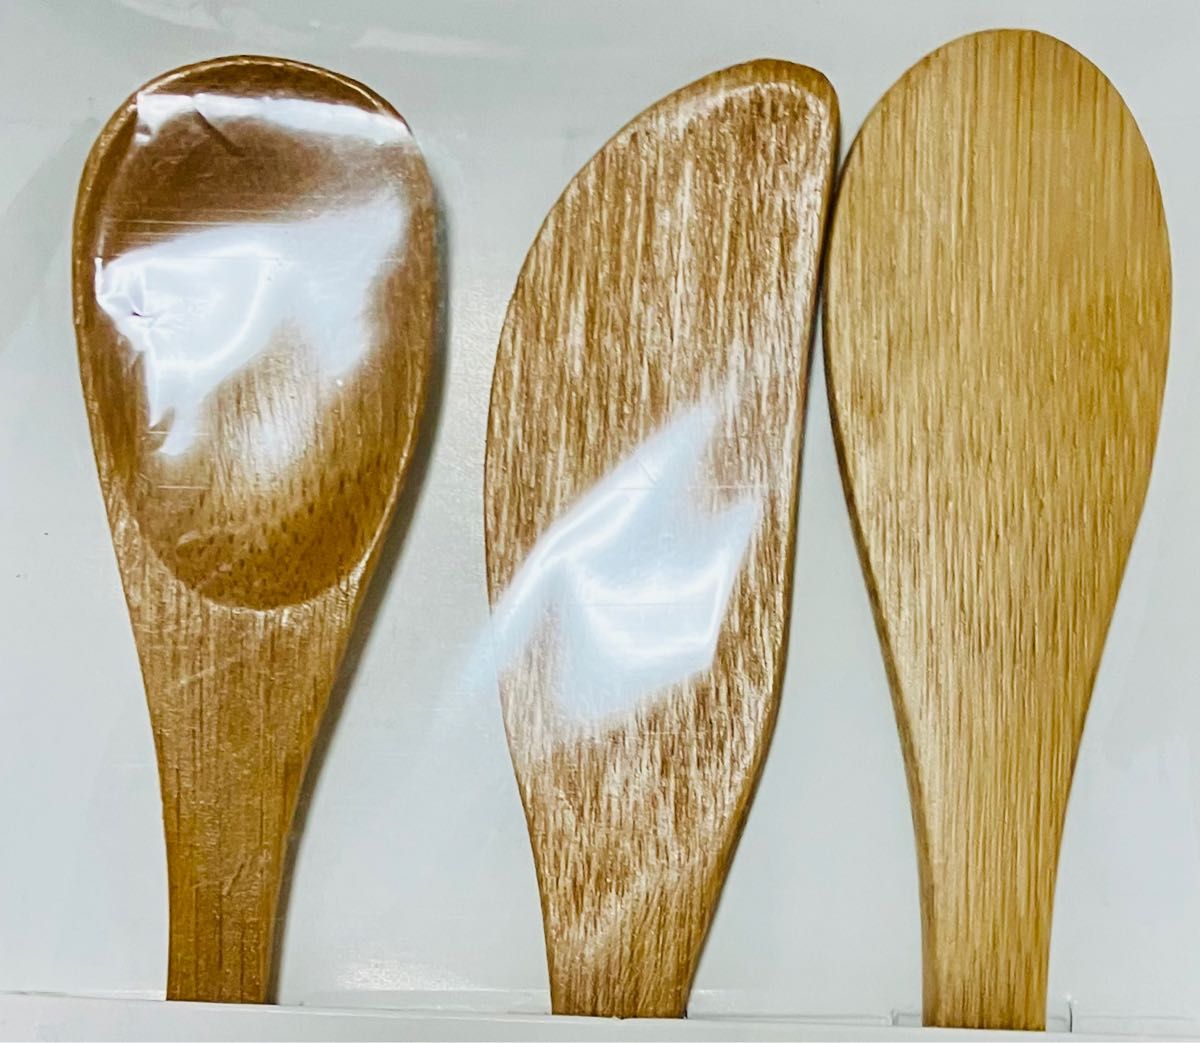 新品【3個入り】Bamboo cutlery 竹製カトラリー